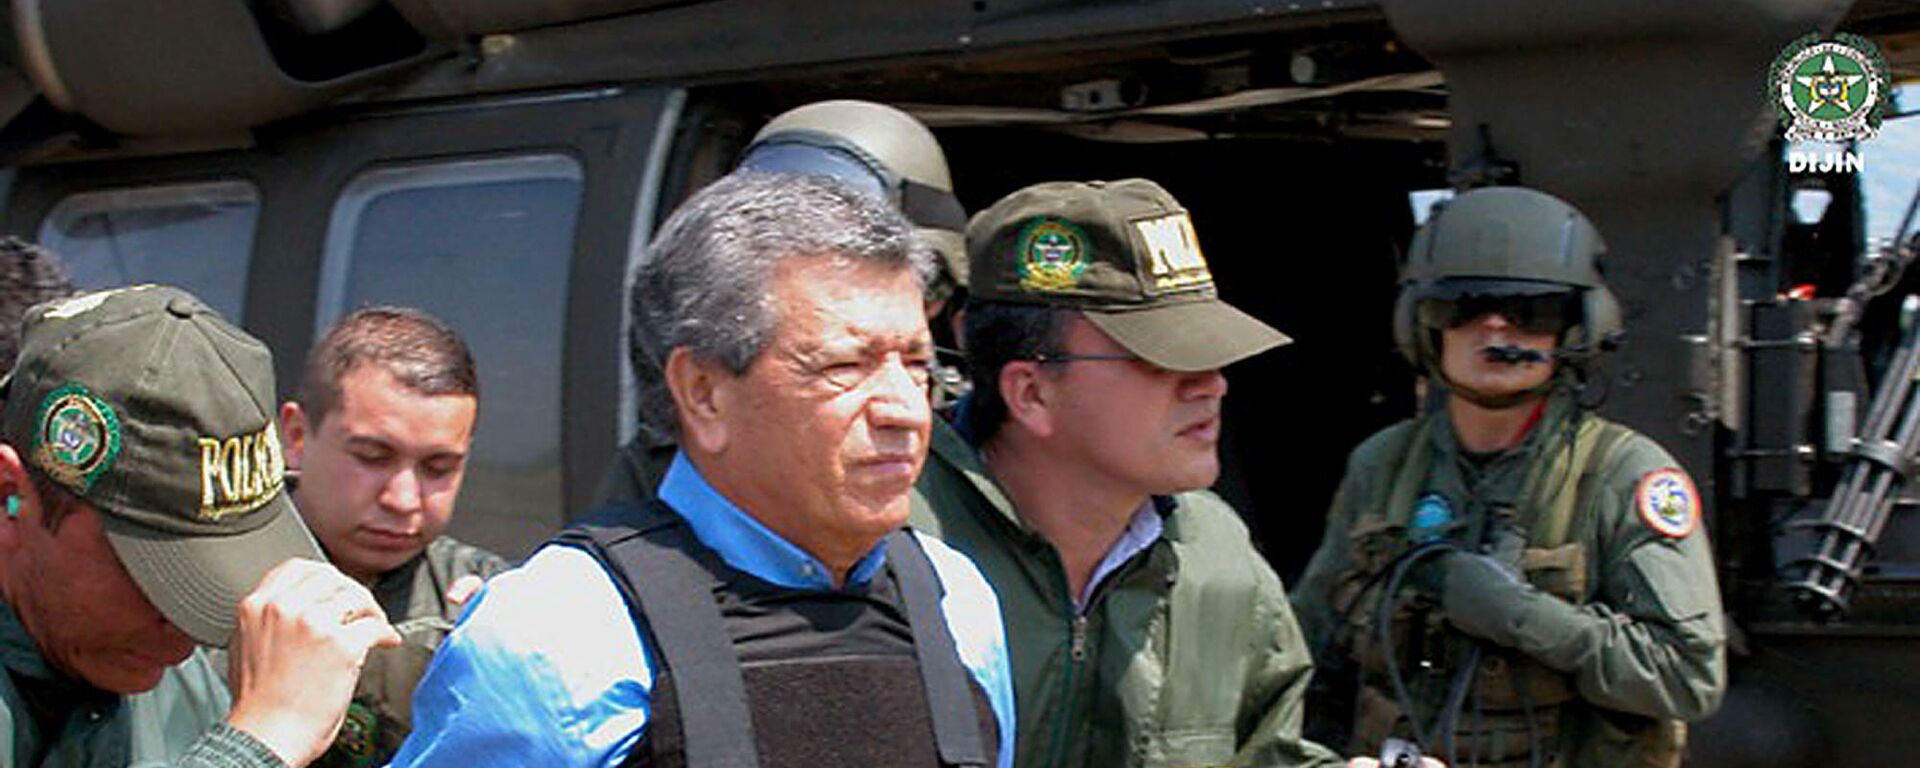 Miguel Rodríguez Orejuela, exfundador y líder del cartel de Medellín, escoltado para ser entregado a las autoridades estadounidenses el 11 de marzo de 2005 en la base aérea de Palanquero, cerca de Puerto, Colombia - Sputnik Mundo, 1920, 22.11.2021